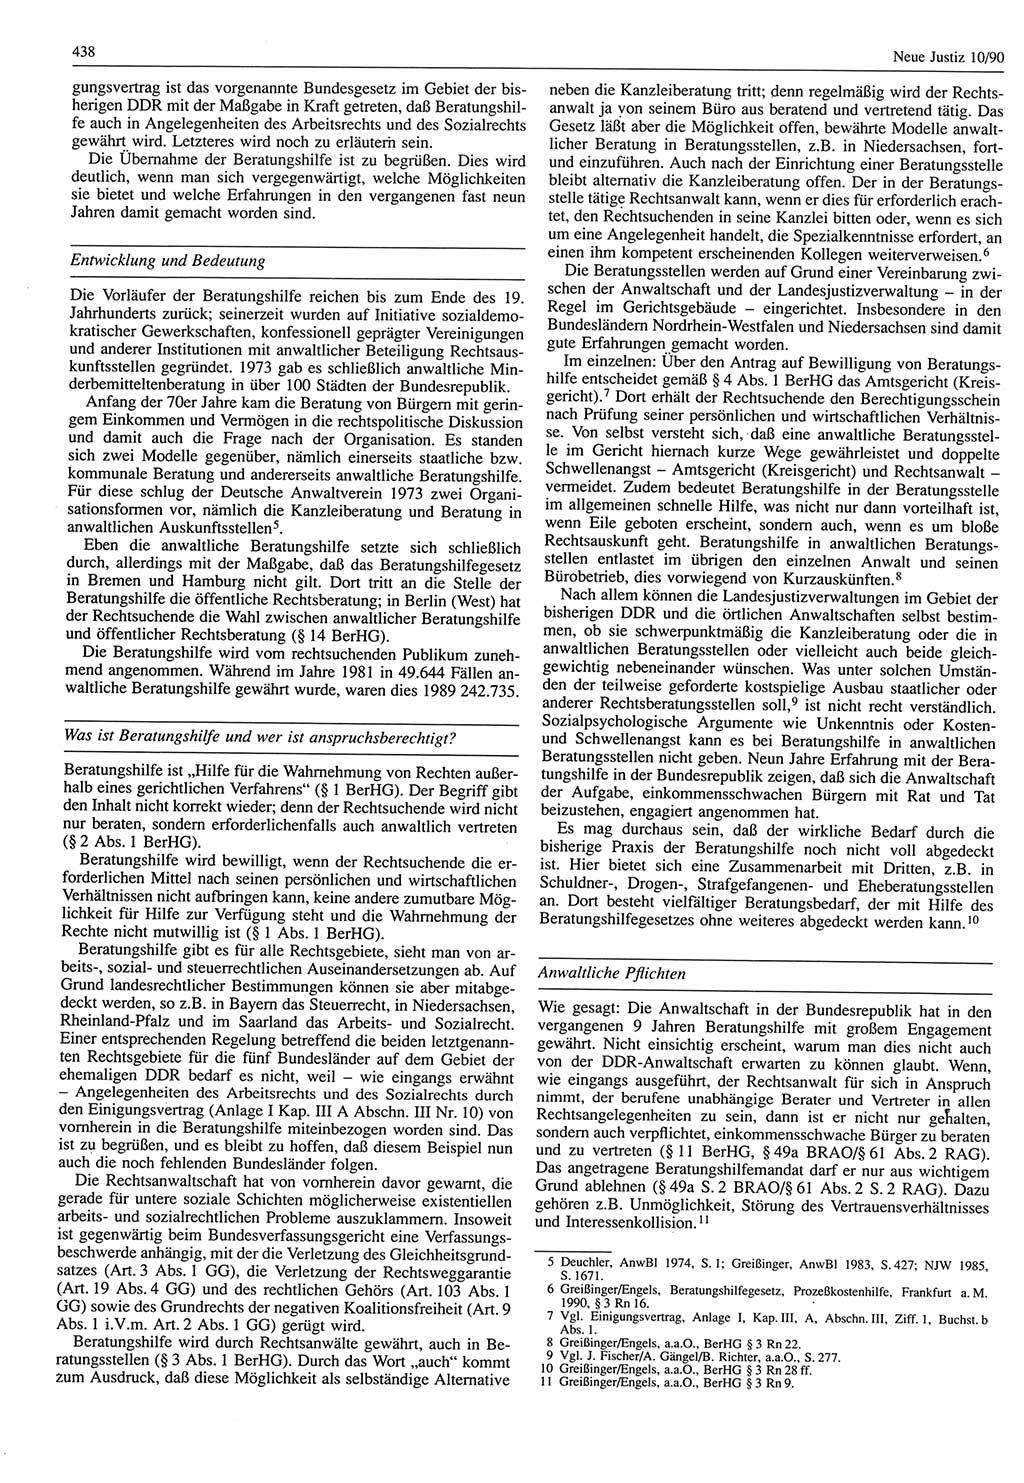 Neue Justiz (NJ), Zeitschrift für Rechtsetzung und Rechtsanwendung [Deutsche Demokratische Republik (DDR)], 44. Jahrgang 1990, Seite 438 (NJ DDR 1990, S. 438)